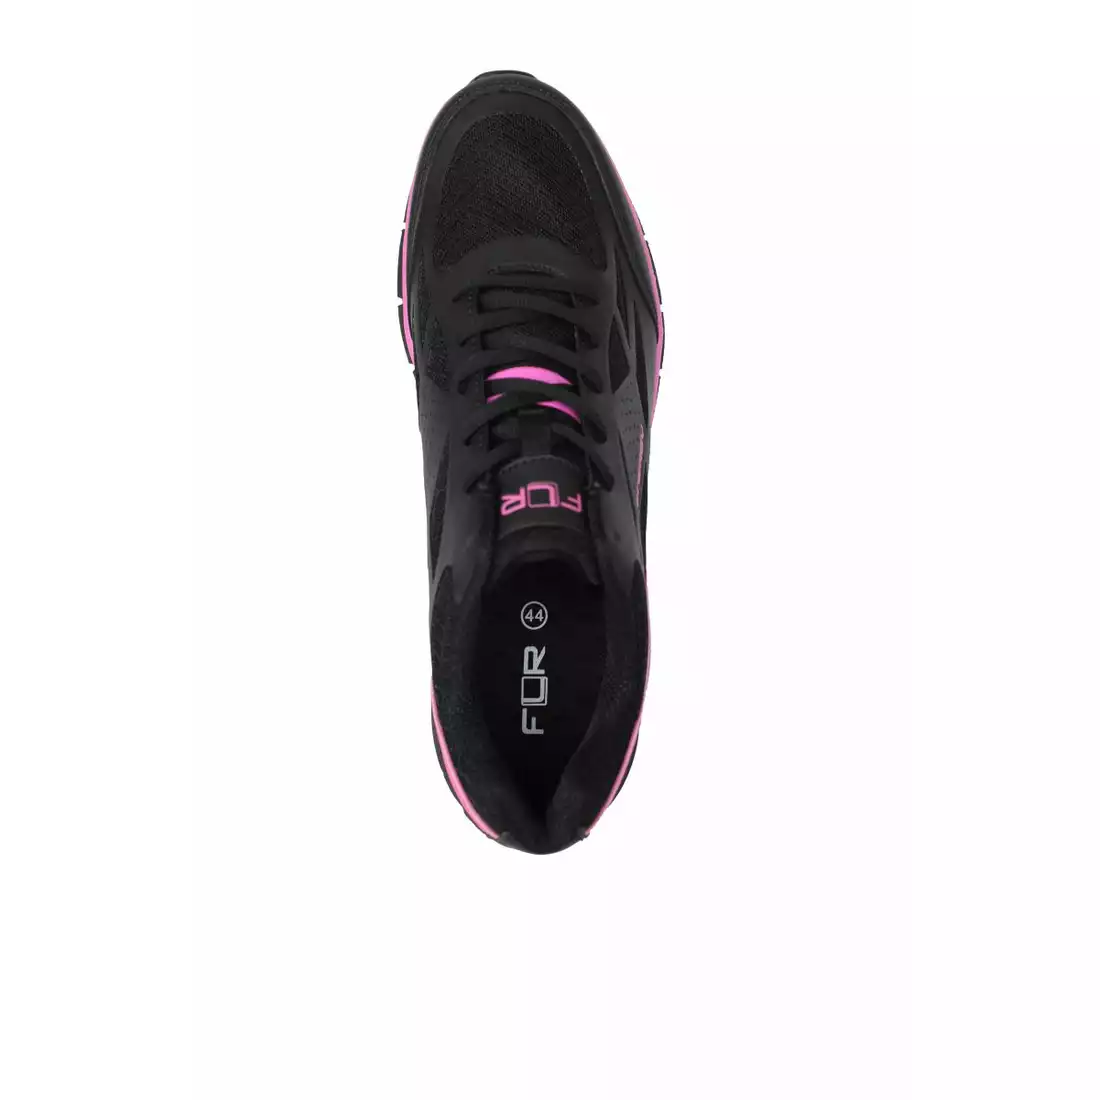 FLR ENERGY damskie buty rowerowe turystyczne czarny różowy